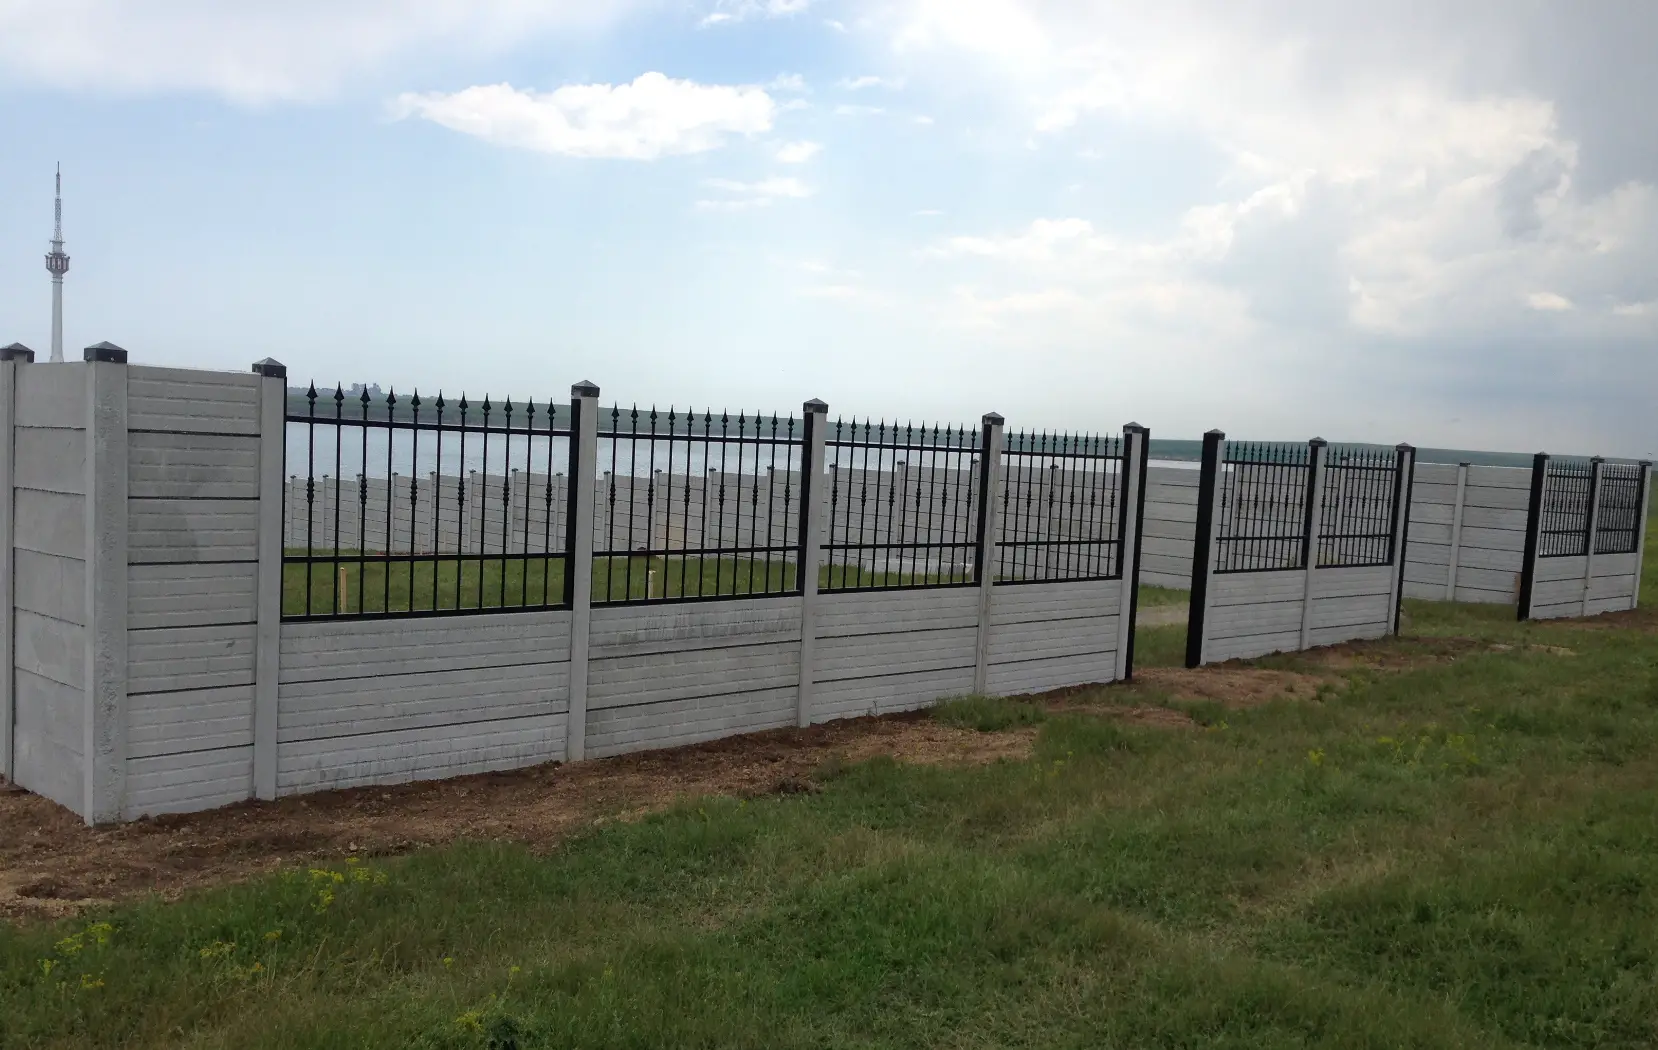 garduri din placi de beton precast concrete fences 6